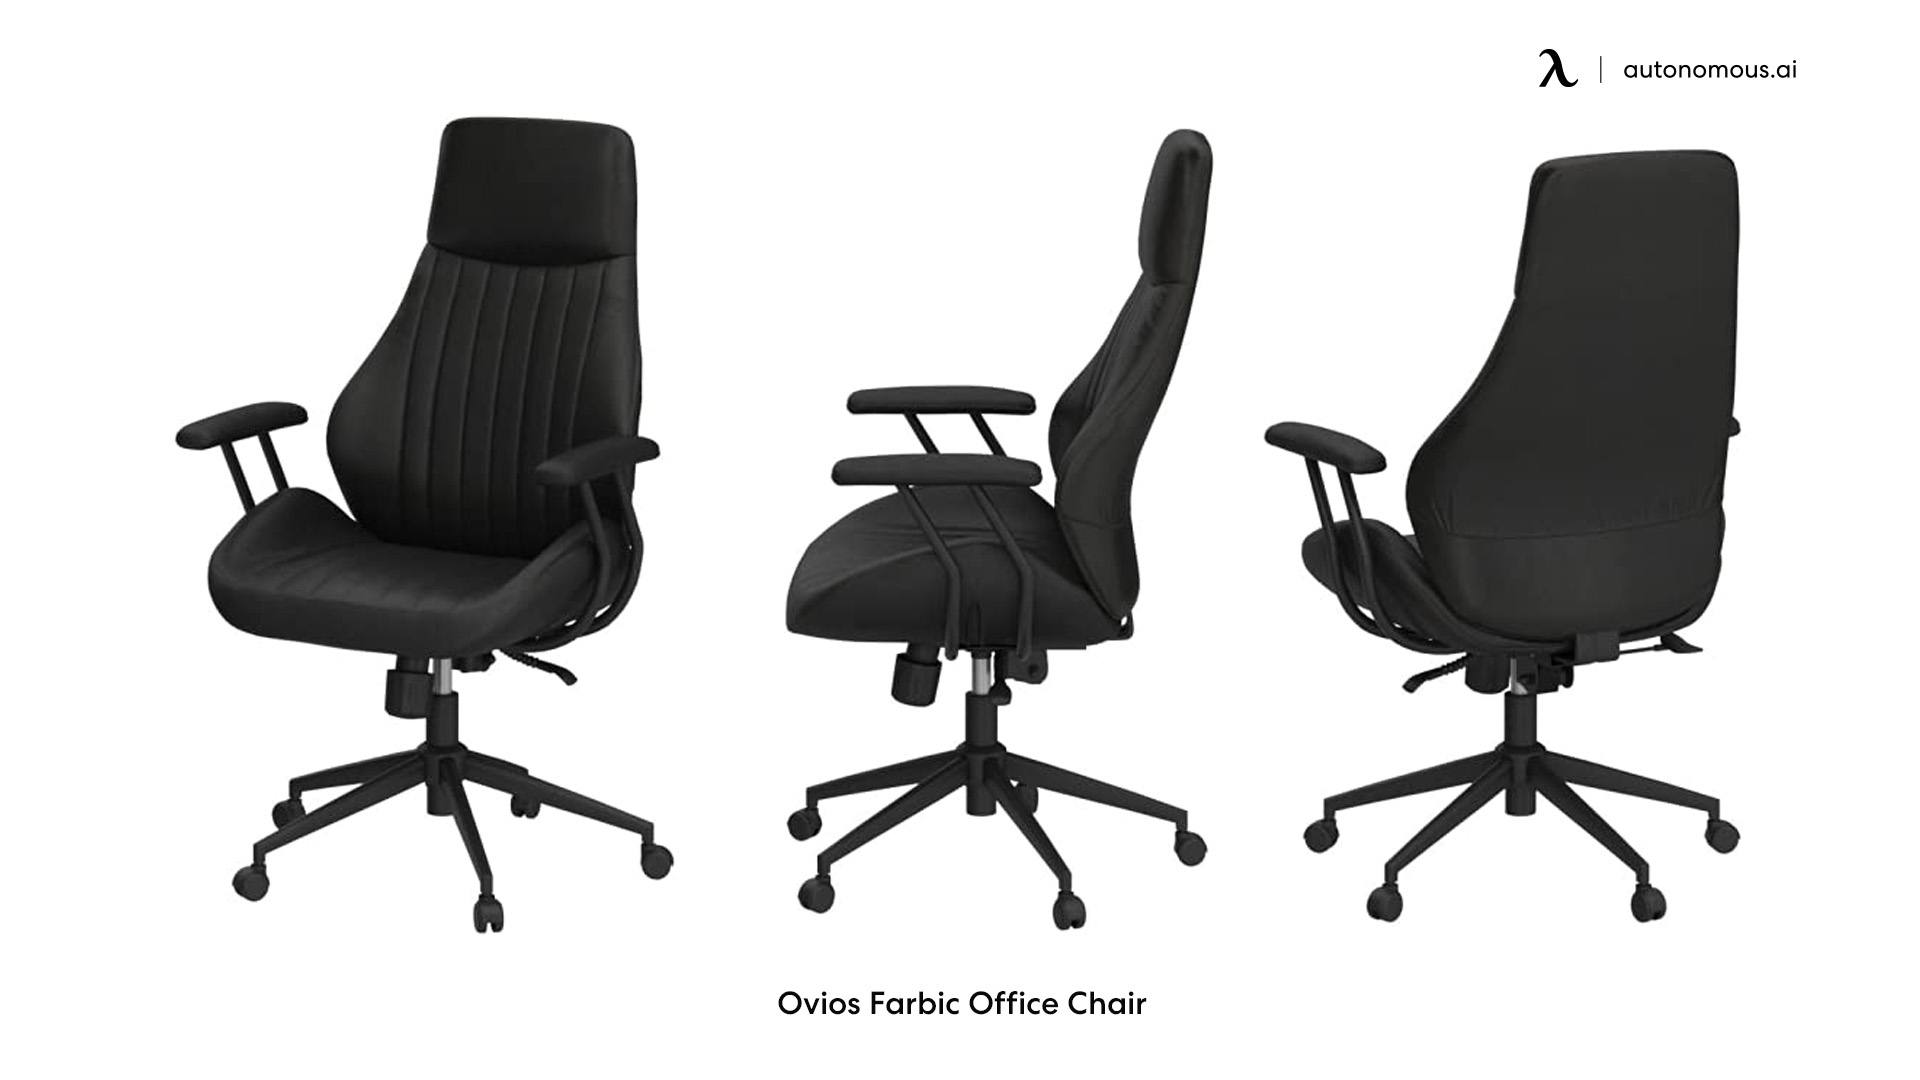 Ovios Farbic Office Chair